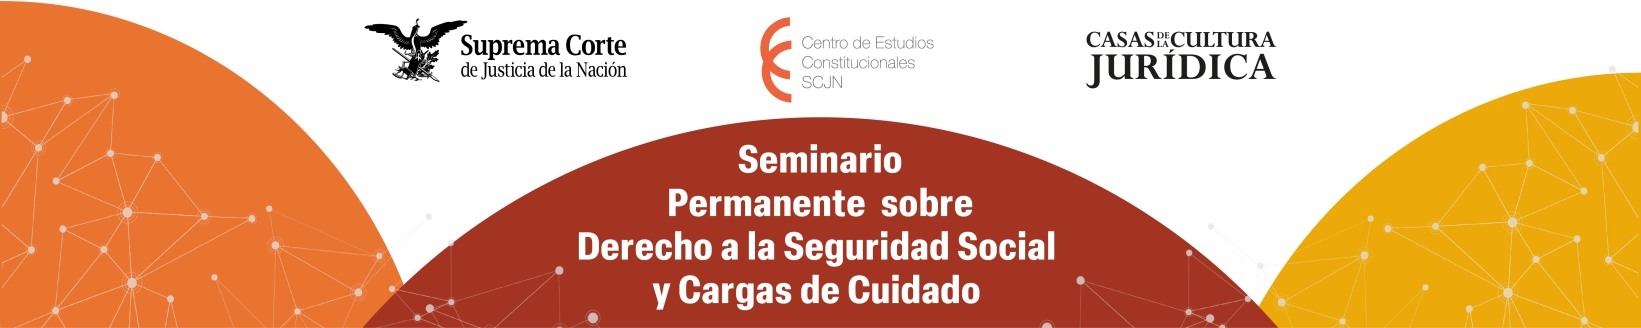 Banner del Seminario Permanente sobre Derecho a la Seguridad Social y Cargas de Cuidado